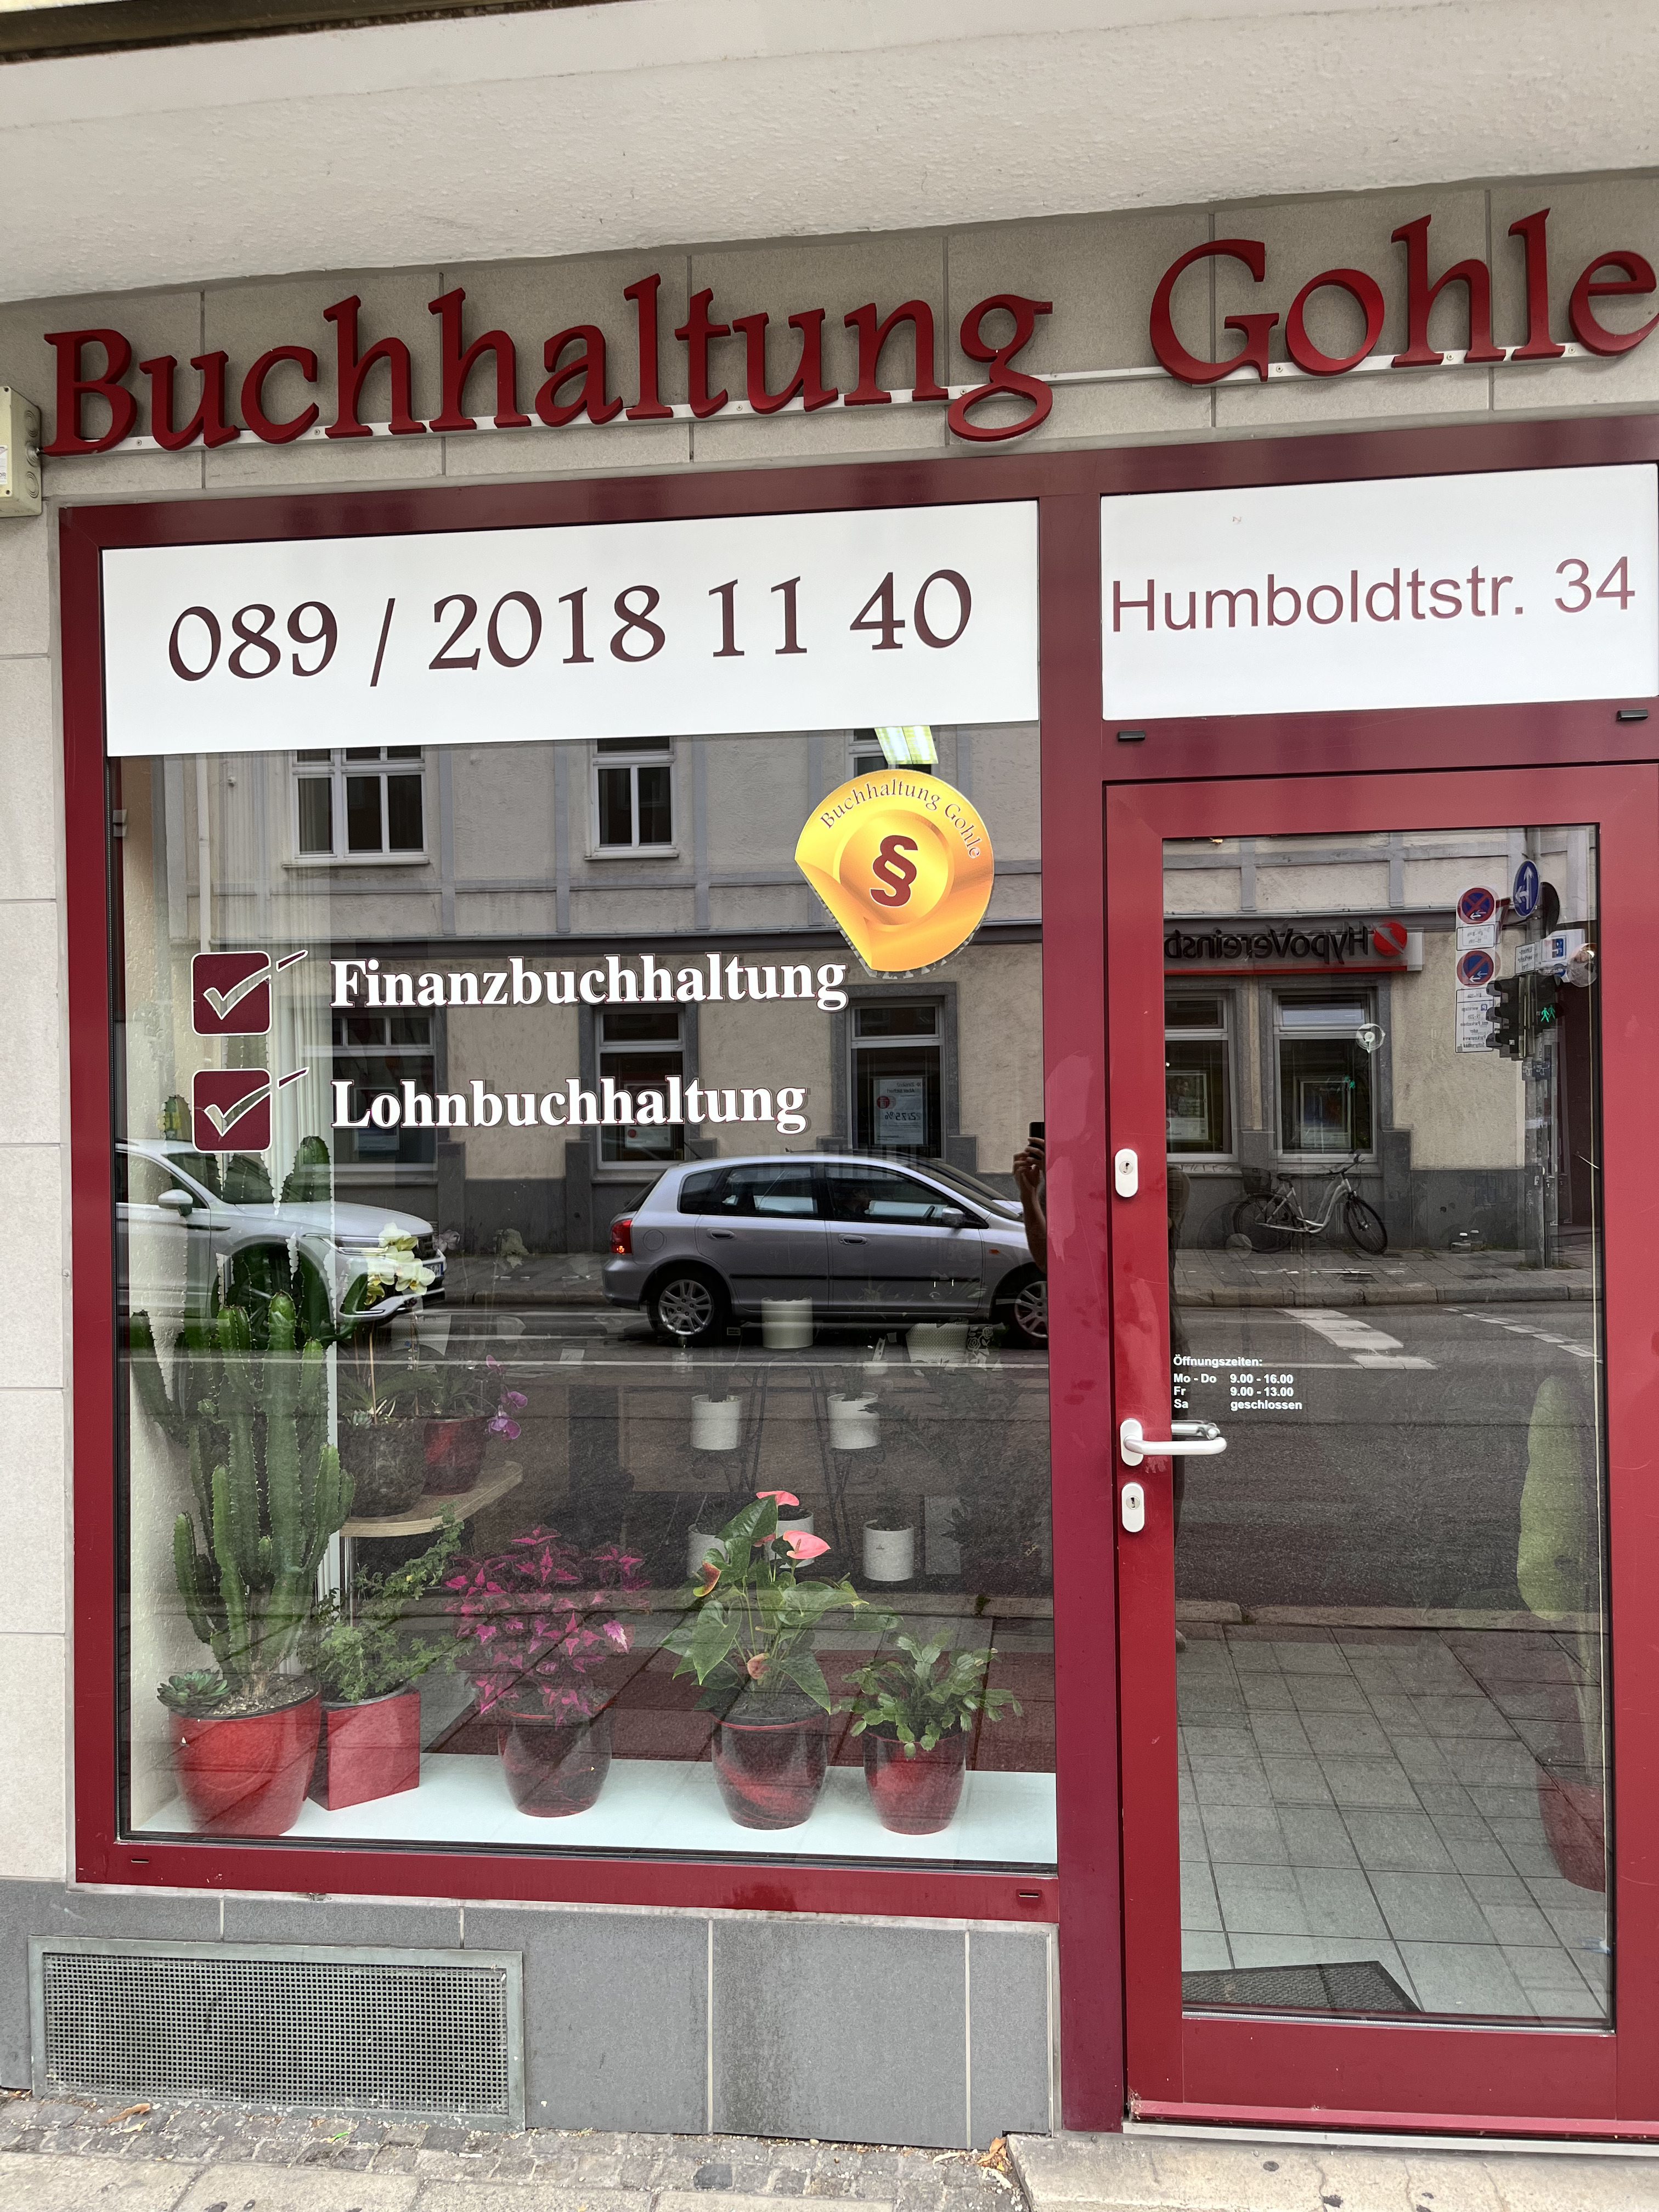 Kundenbild groß 1 Buchhaltung Gohle in München